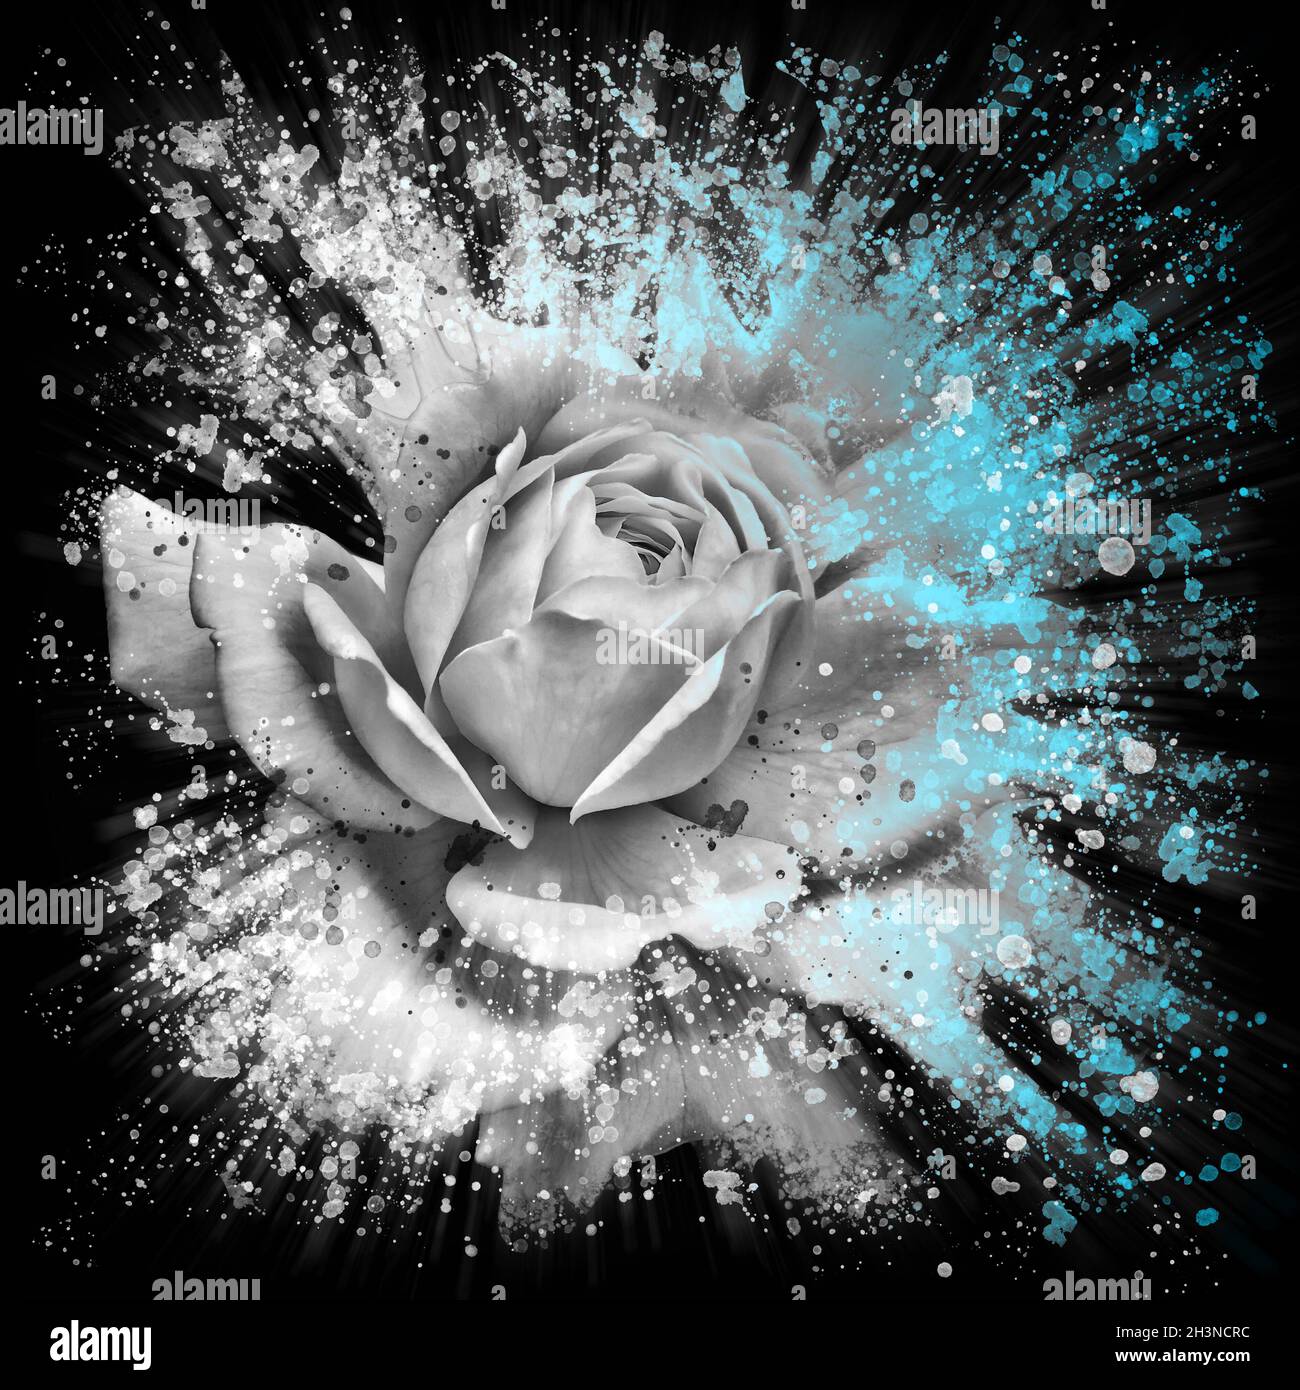 Dramatischer Spritzer Effekt einzelne weiße Rose Blumenkunst mit blauen Highlights auf einem schwarzen Hintergrund Stockfoto